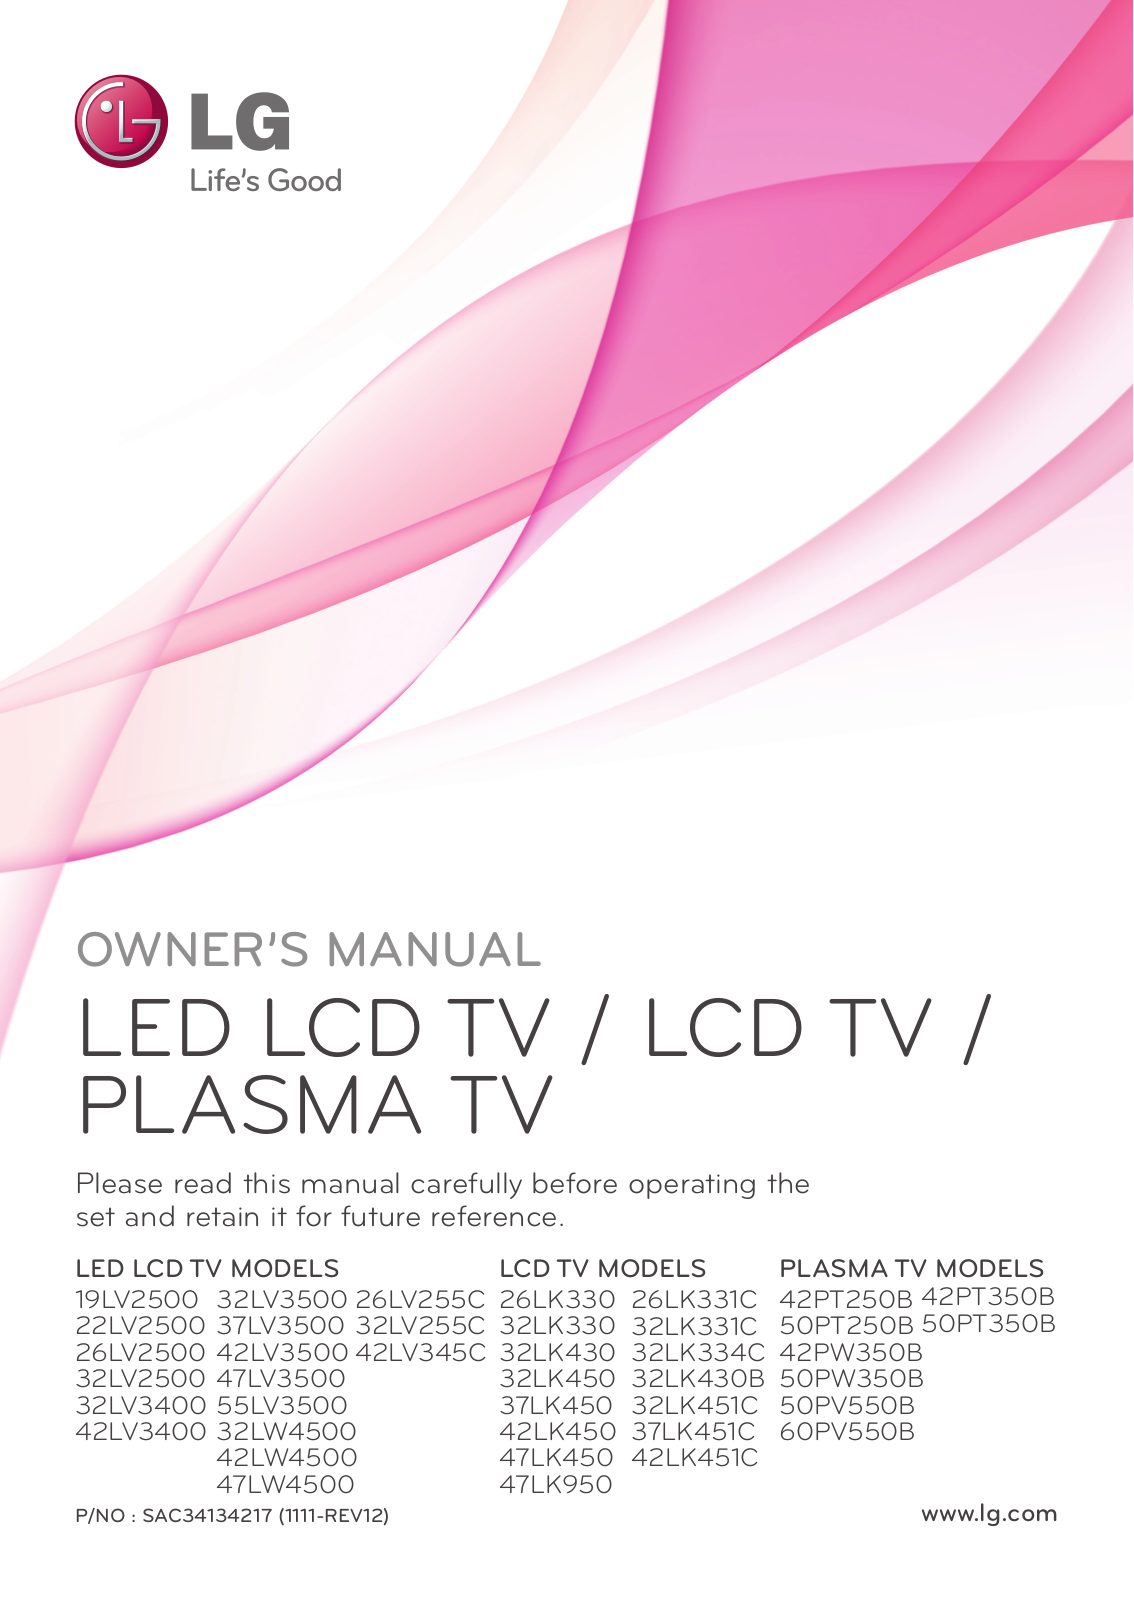 LG 32LK451C, 32LK450-SA, 32LV3500-SA, 22LV2500 Owner's Manual